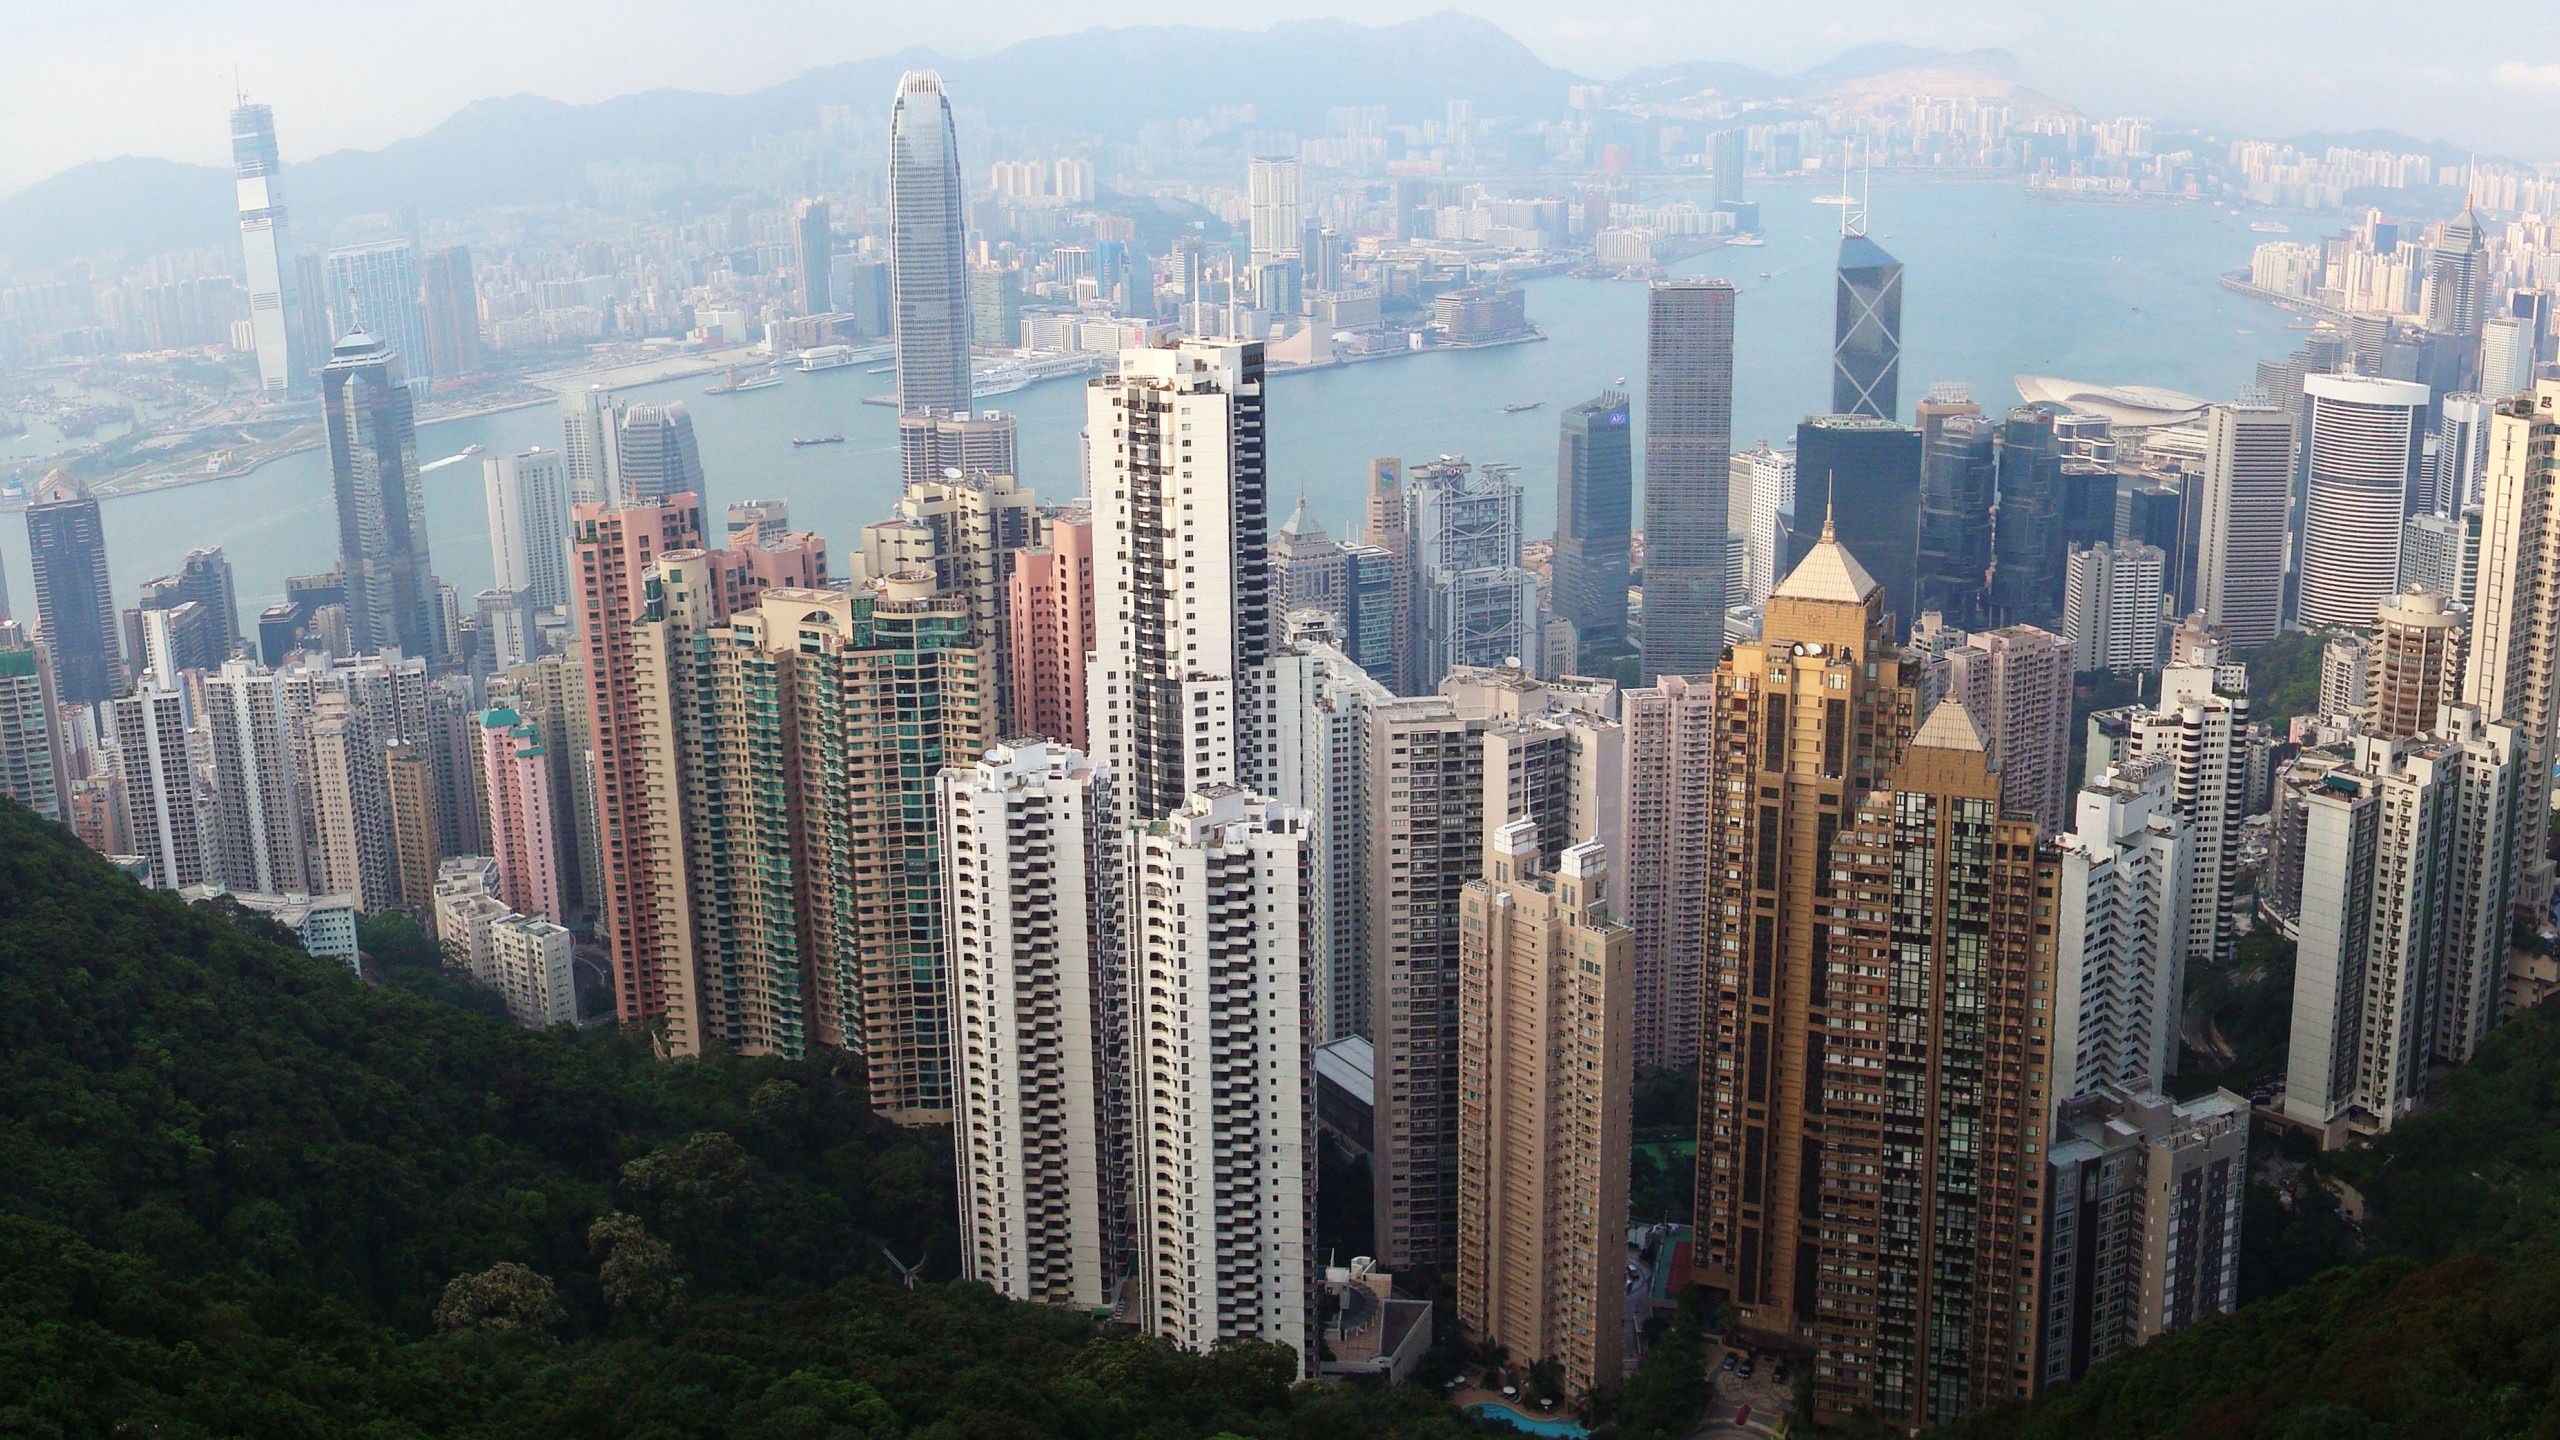 Hong Kong Skyline for 2560x1440 HDTV resolution